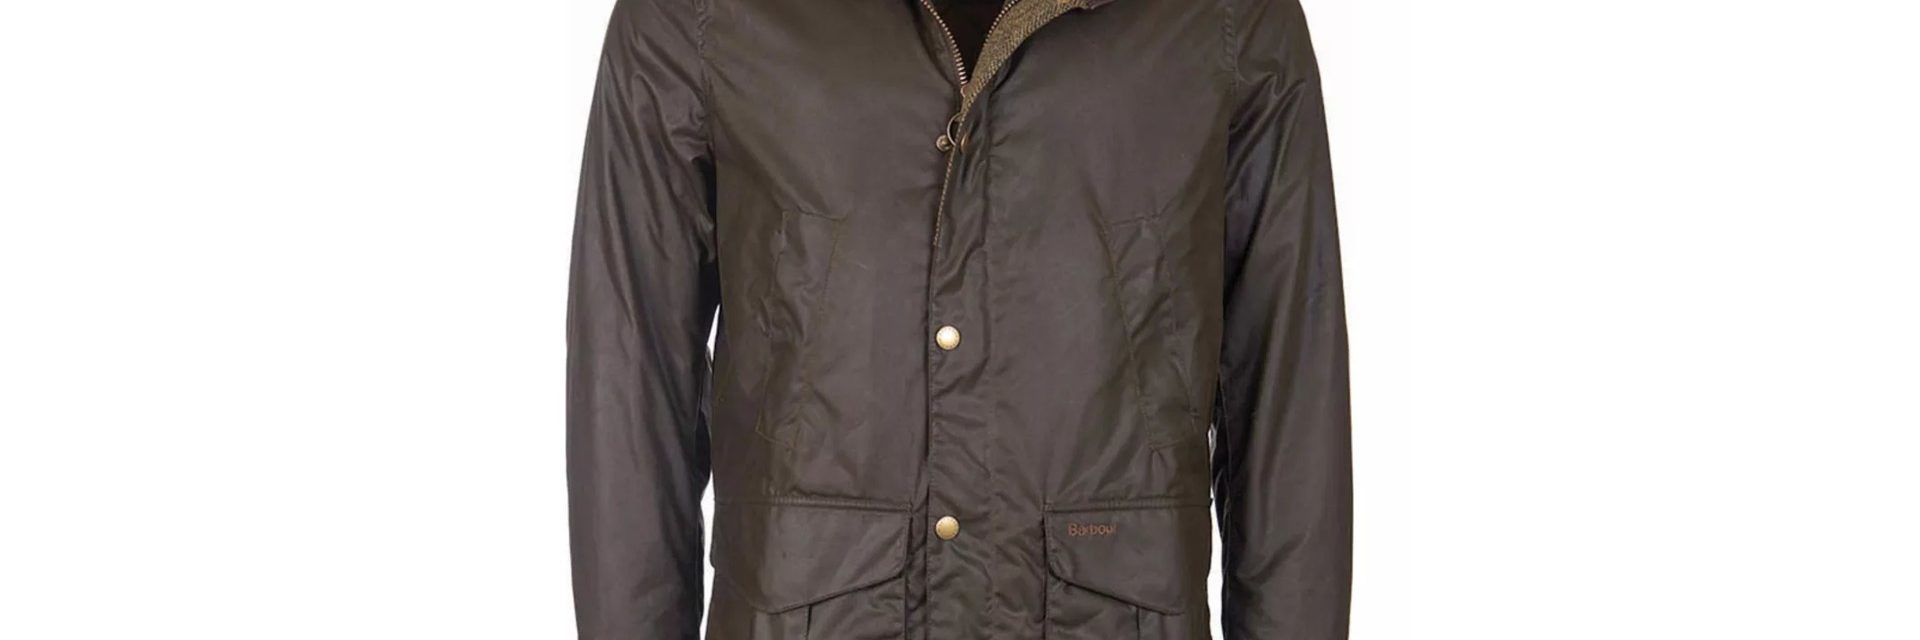 Hereford Wax Jacket